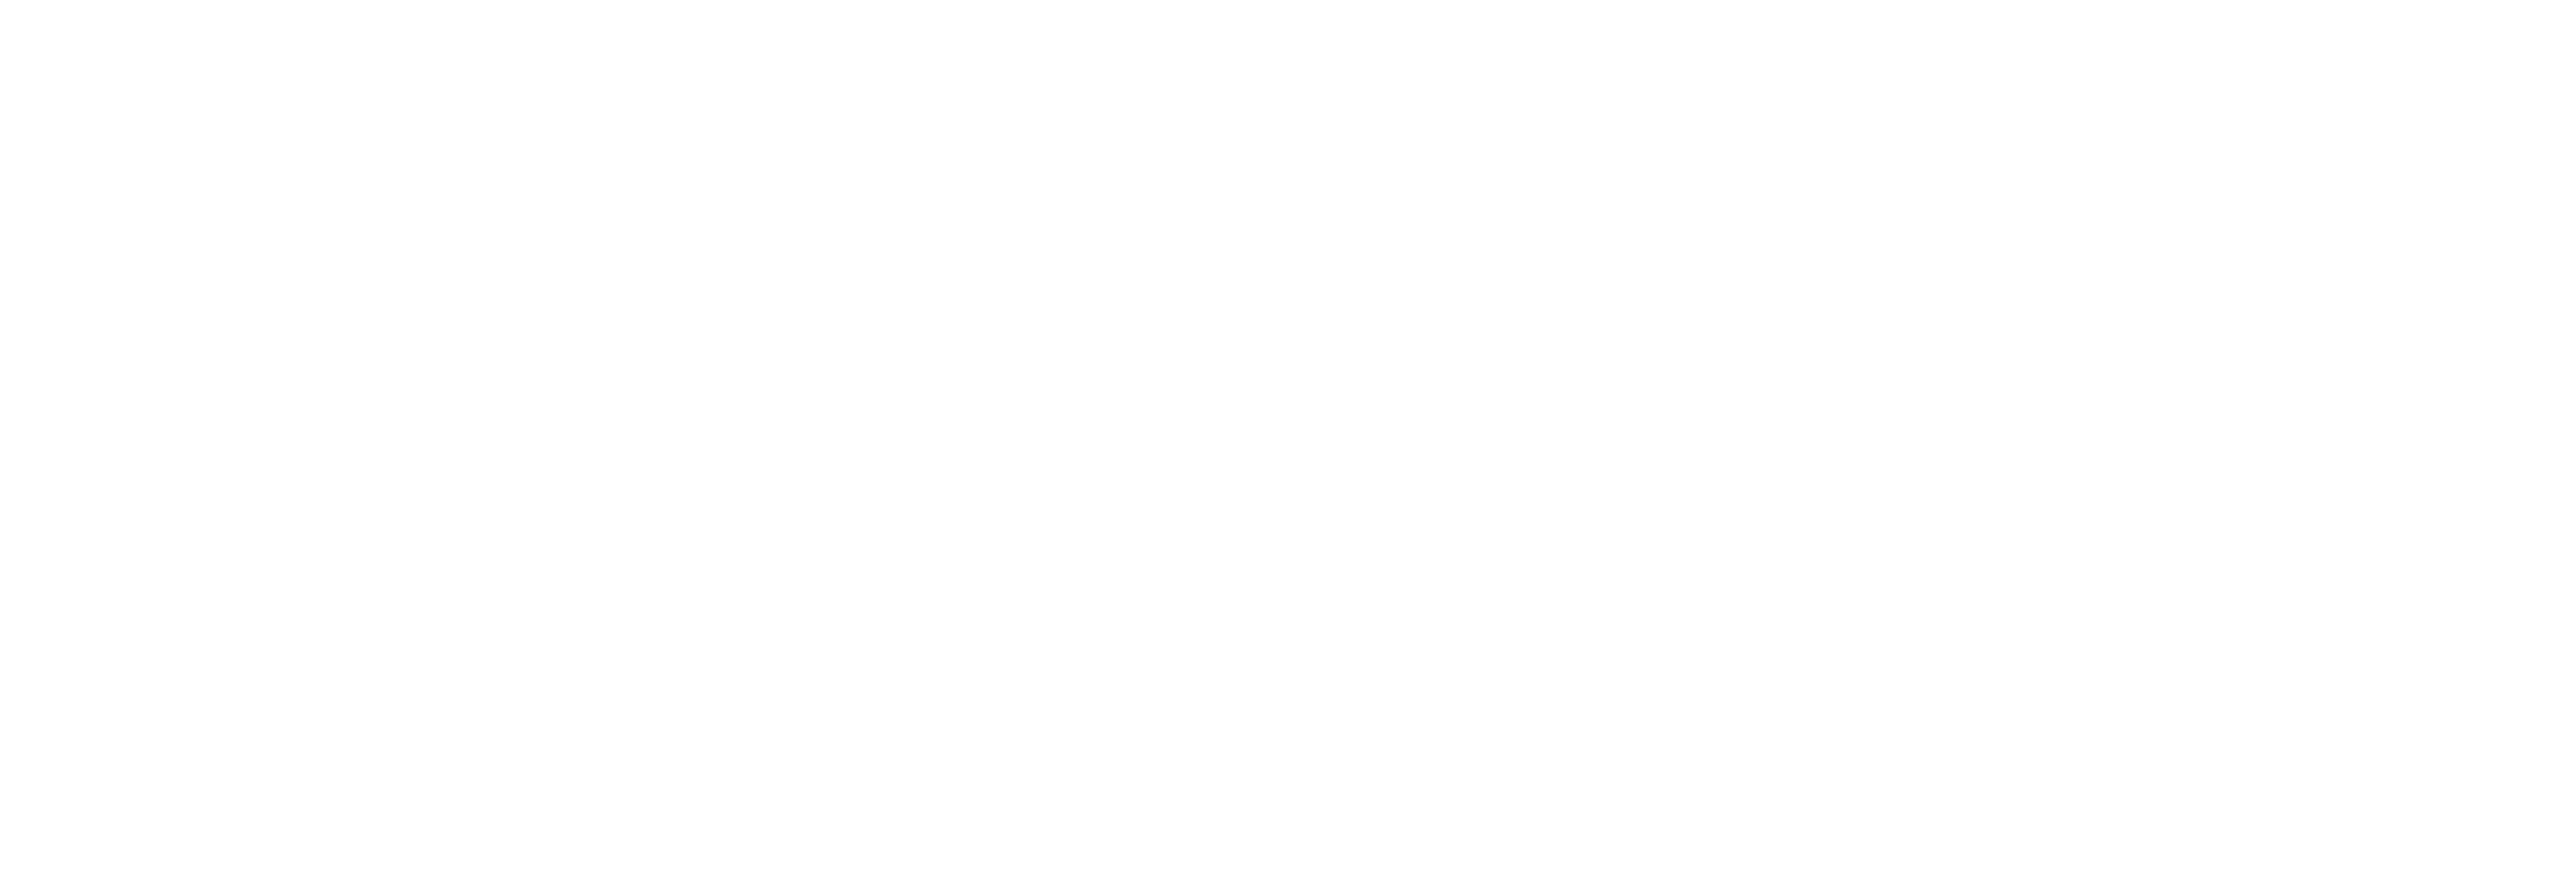 Castillo Jurídico Abogados